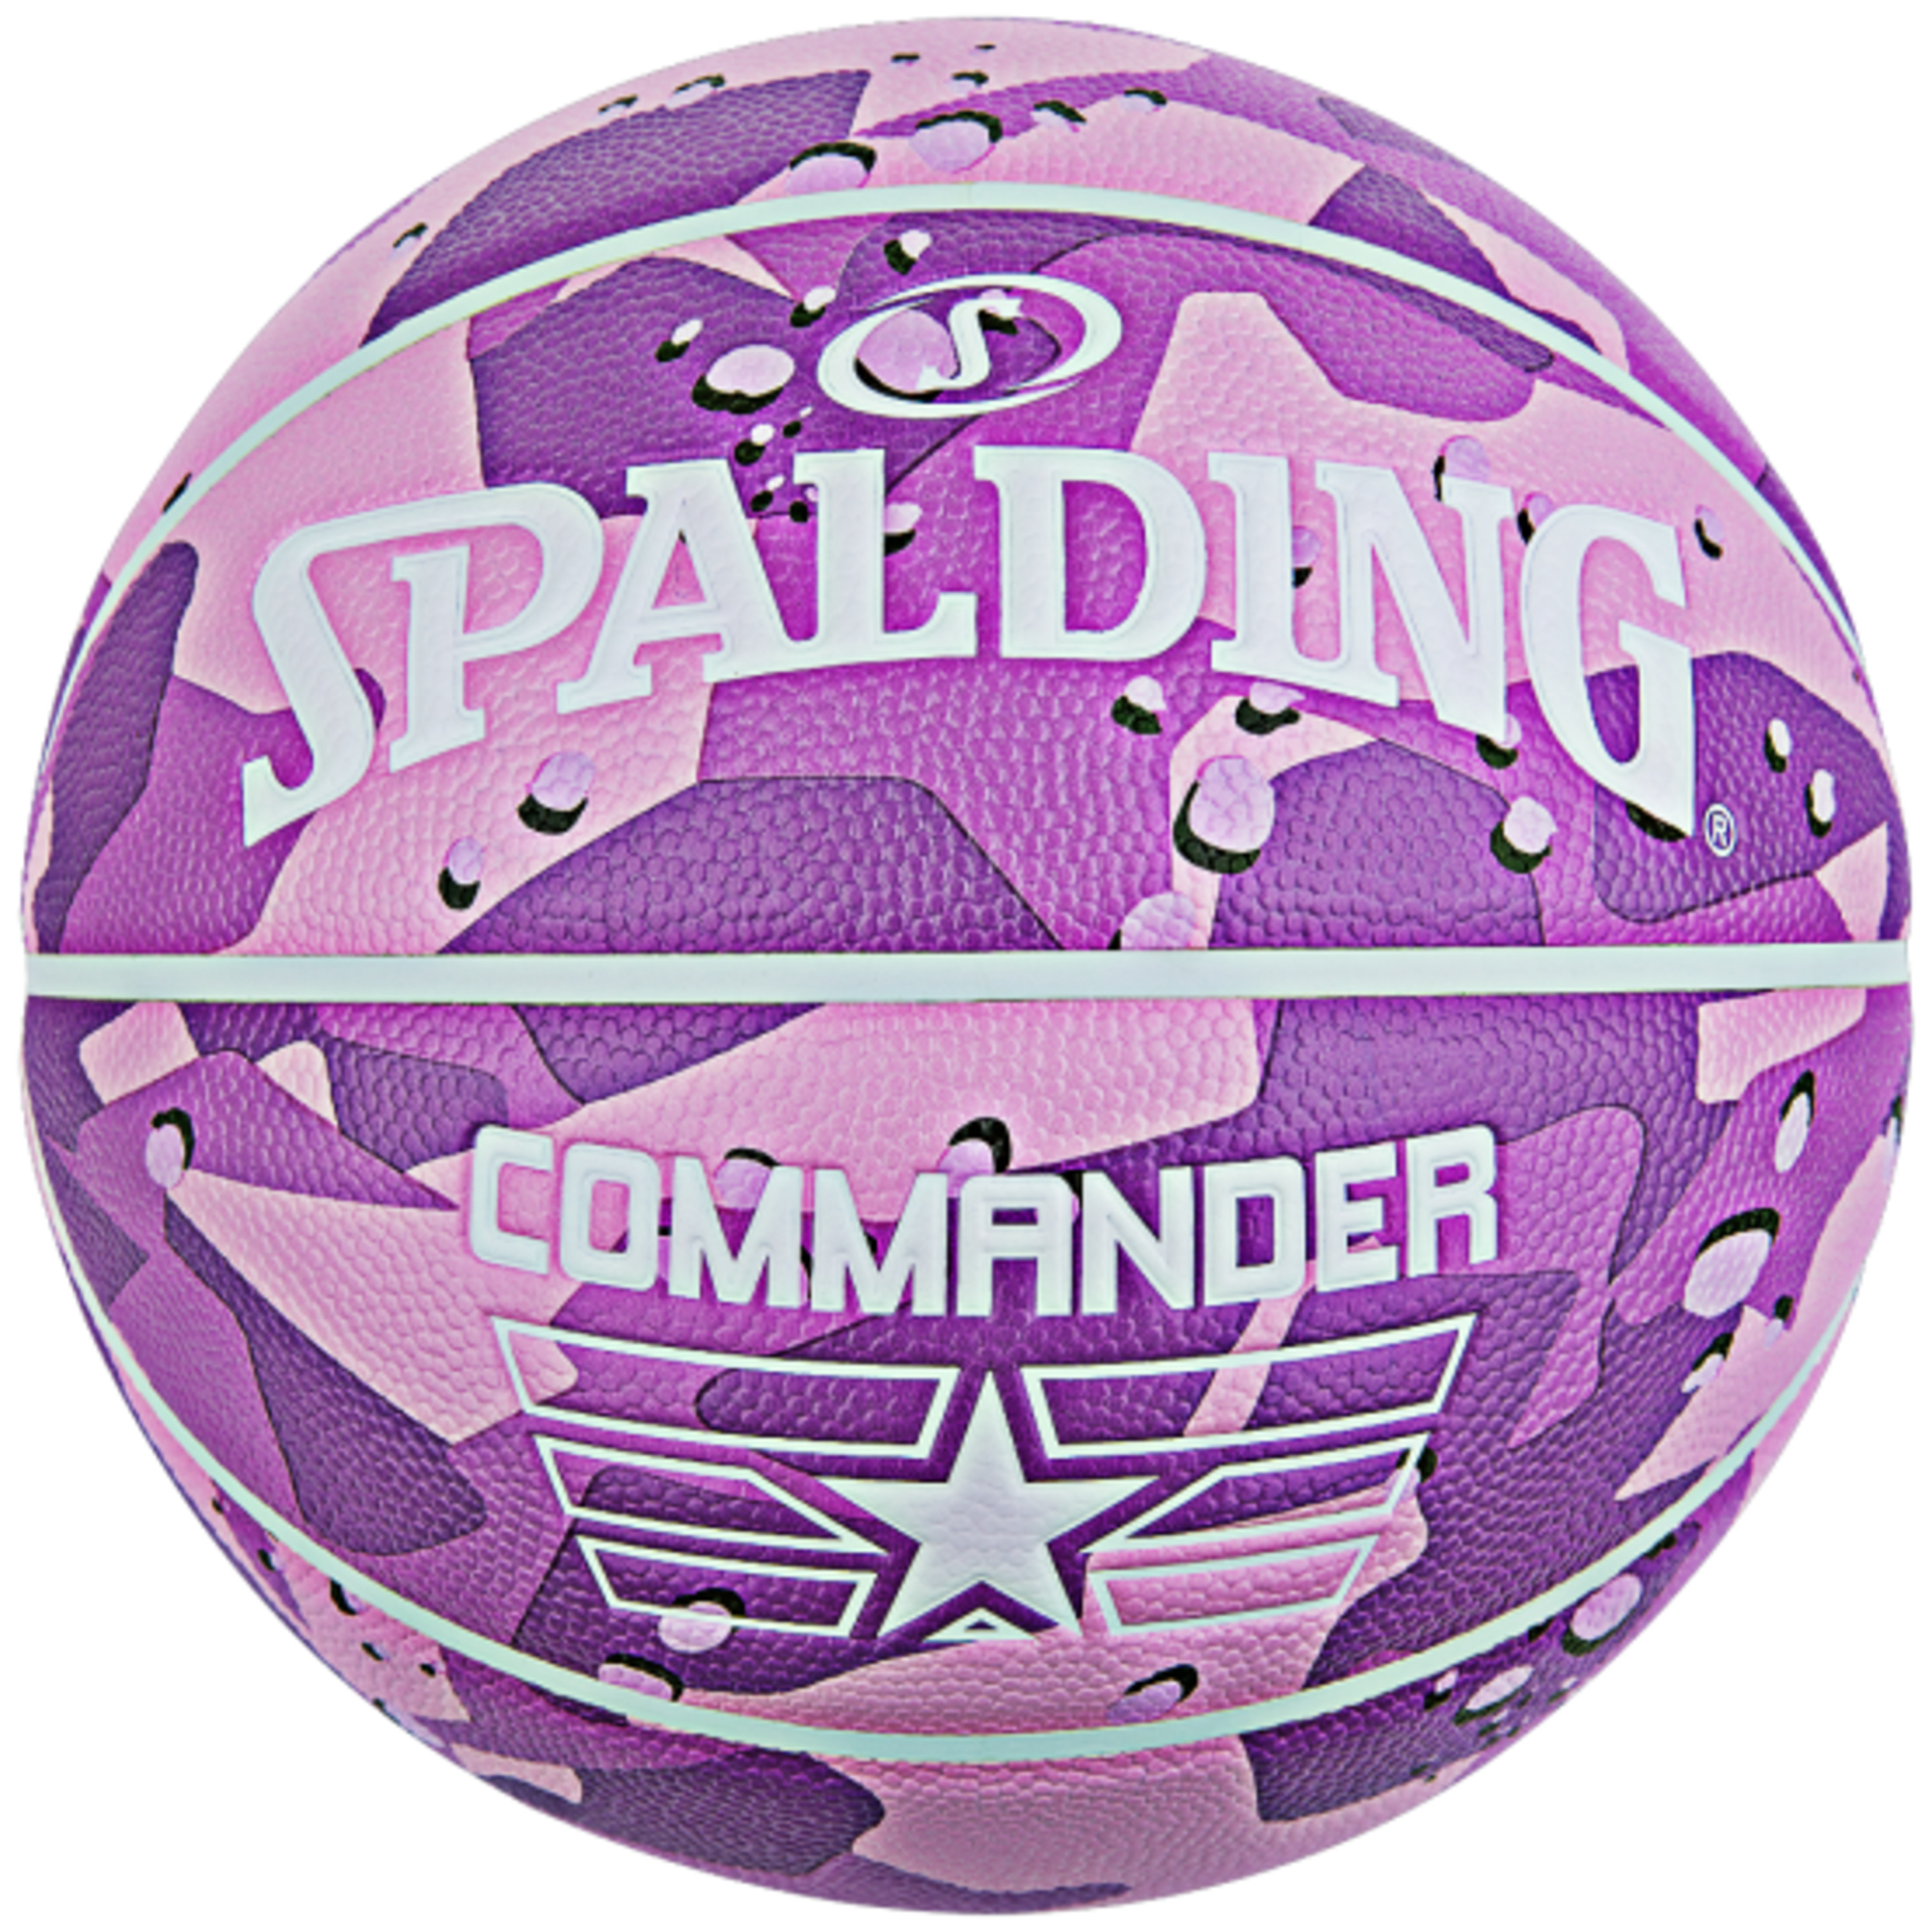 Balón De Baloncesto Spalding Commander Solid Purple Sz6 - purpura - 